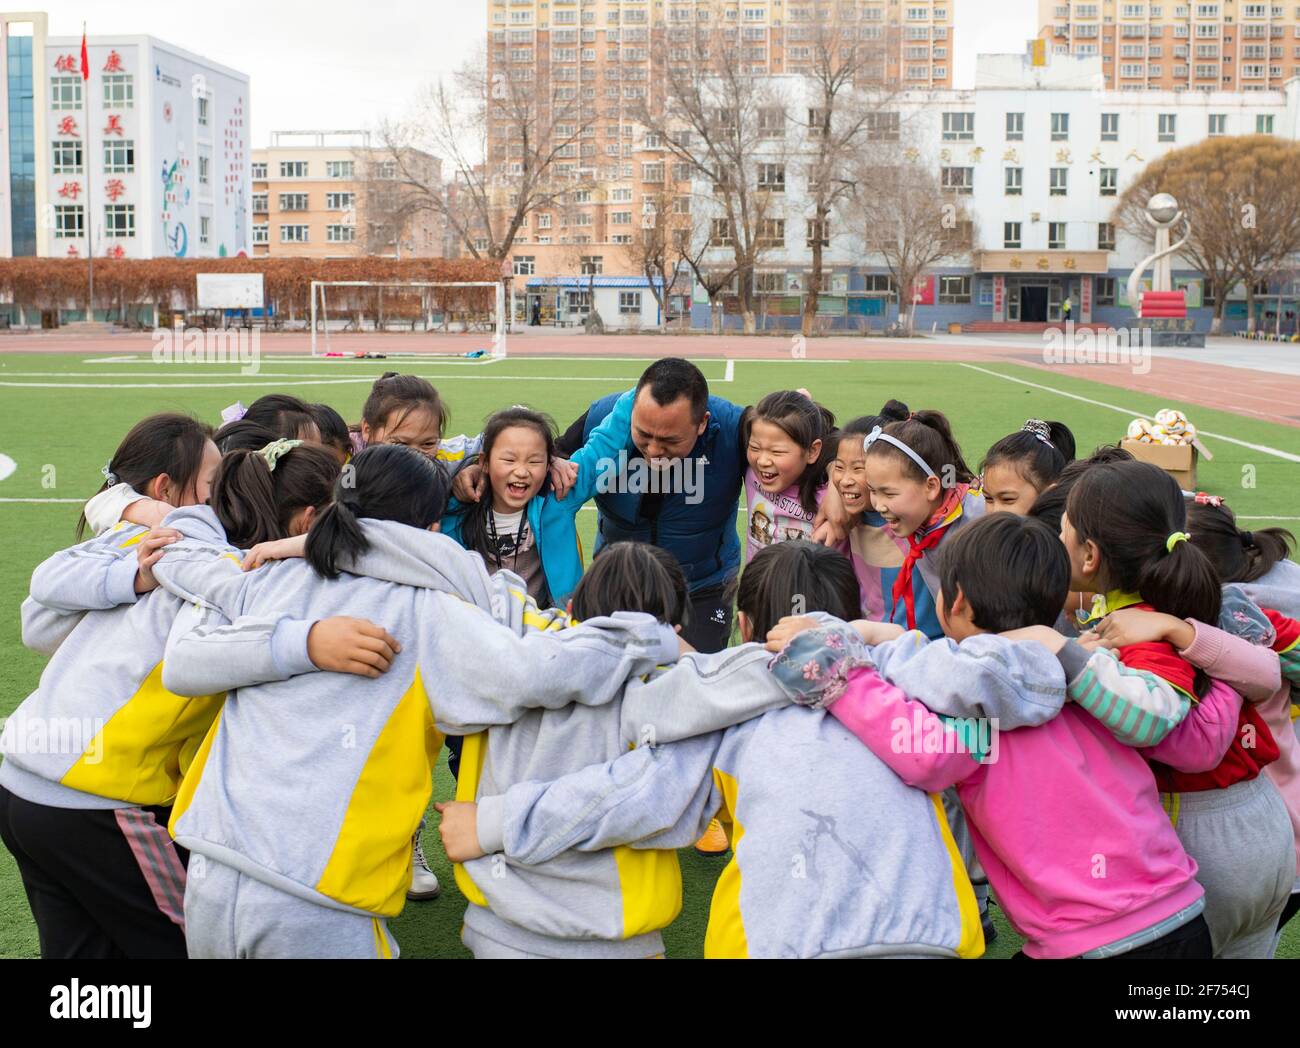 (210405) -- SHAWAN, 5. April 2021 (Xinhua) -- Xia Songhao (C) feuert seine Schüler vor einer Trainingseinheit in der Stadt Shawan, im Nordwesten Chinas, der Autonomen Region Xinjiang Uygur, am 31. März 2021 an. 2011 wurde die Mädchen-Fußballmannschaft der Grundschule Nr. 2 in Shawan City gegründet. Unter der Leitung von Xia Songhao, der seit fast zehn Jahren Fußball auf dem Campus trainiert, hat sich die Fußballmannschaft der Mädchen zu einer vielfältigen Gruppe aus multiethnischen Spielern entwickelt. Nach kontinuierlichem und strengem Training hat das Team hervorragende Ergebnisse erzielt und eine Reihe von Meisterschaften auf verschiedenen Ebenen gewonnen. (X Stockfoto